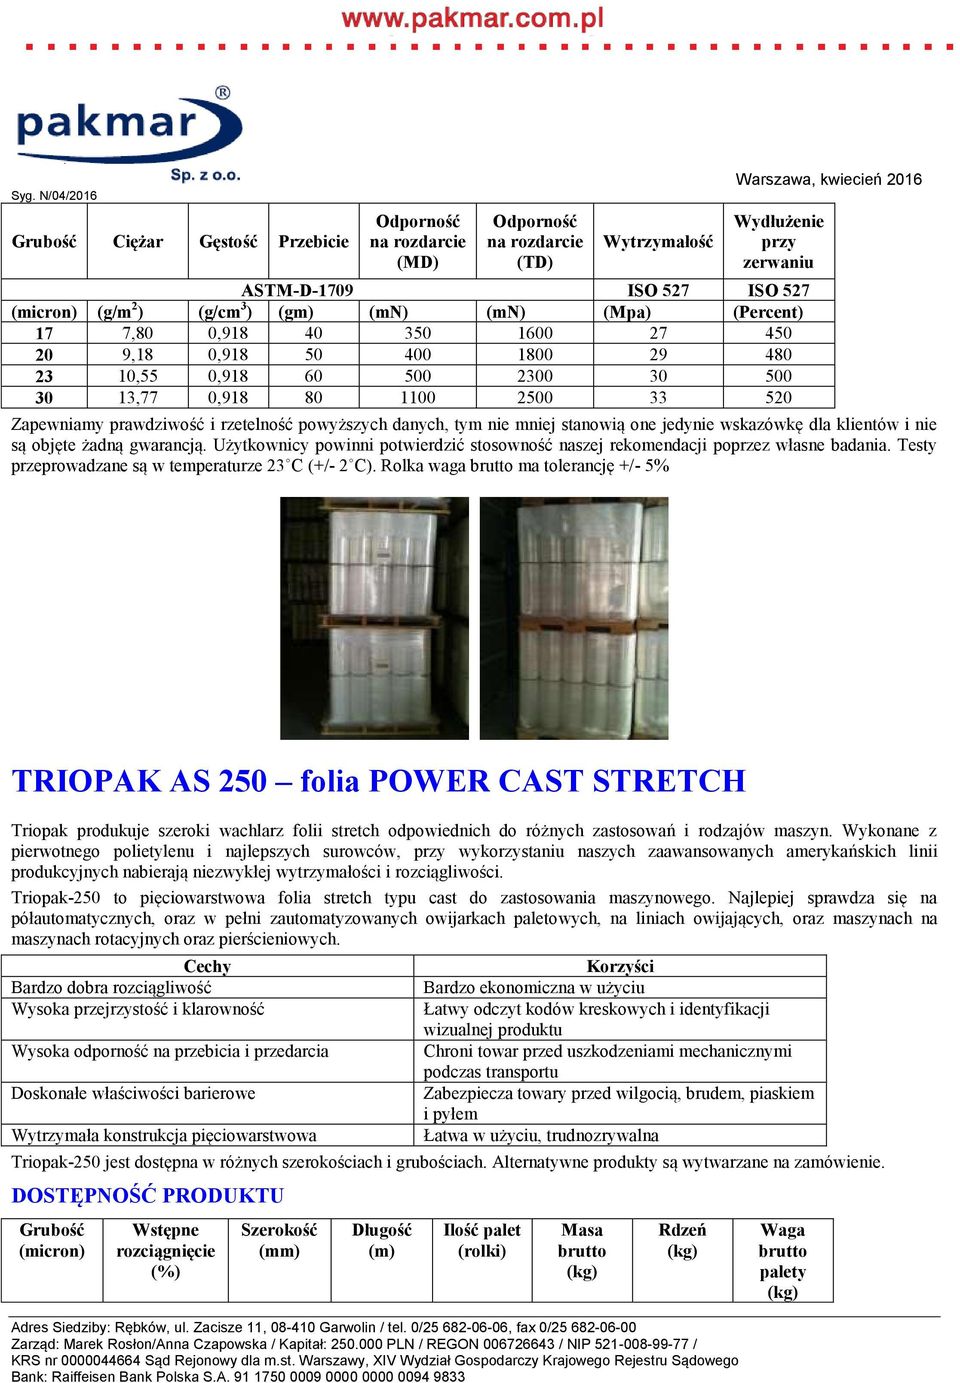 Rolka waga ma tolerancję +/- 5% TRIOPAK AS 250 folia POWER CAST STRETCH Triopak-250 to pięciowarstwowa folia stretch typu cast do zastosowania maszynowego.